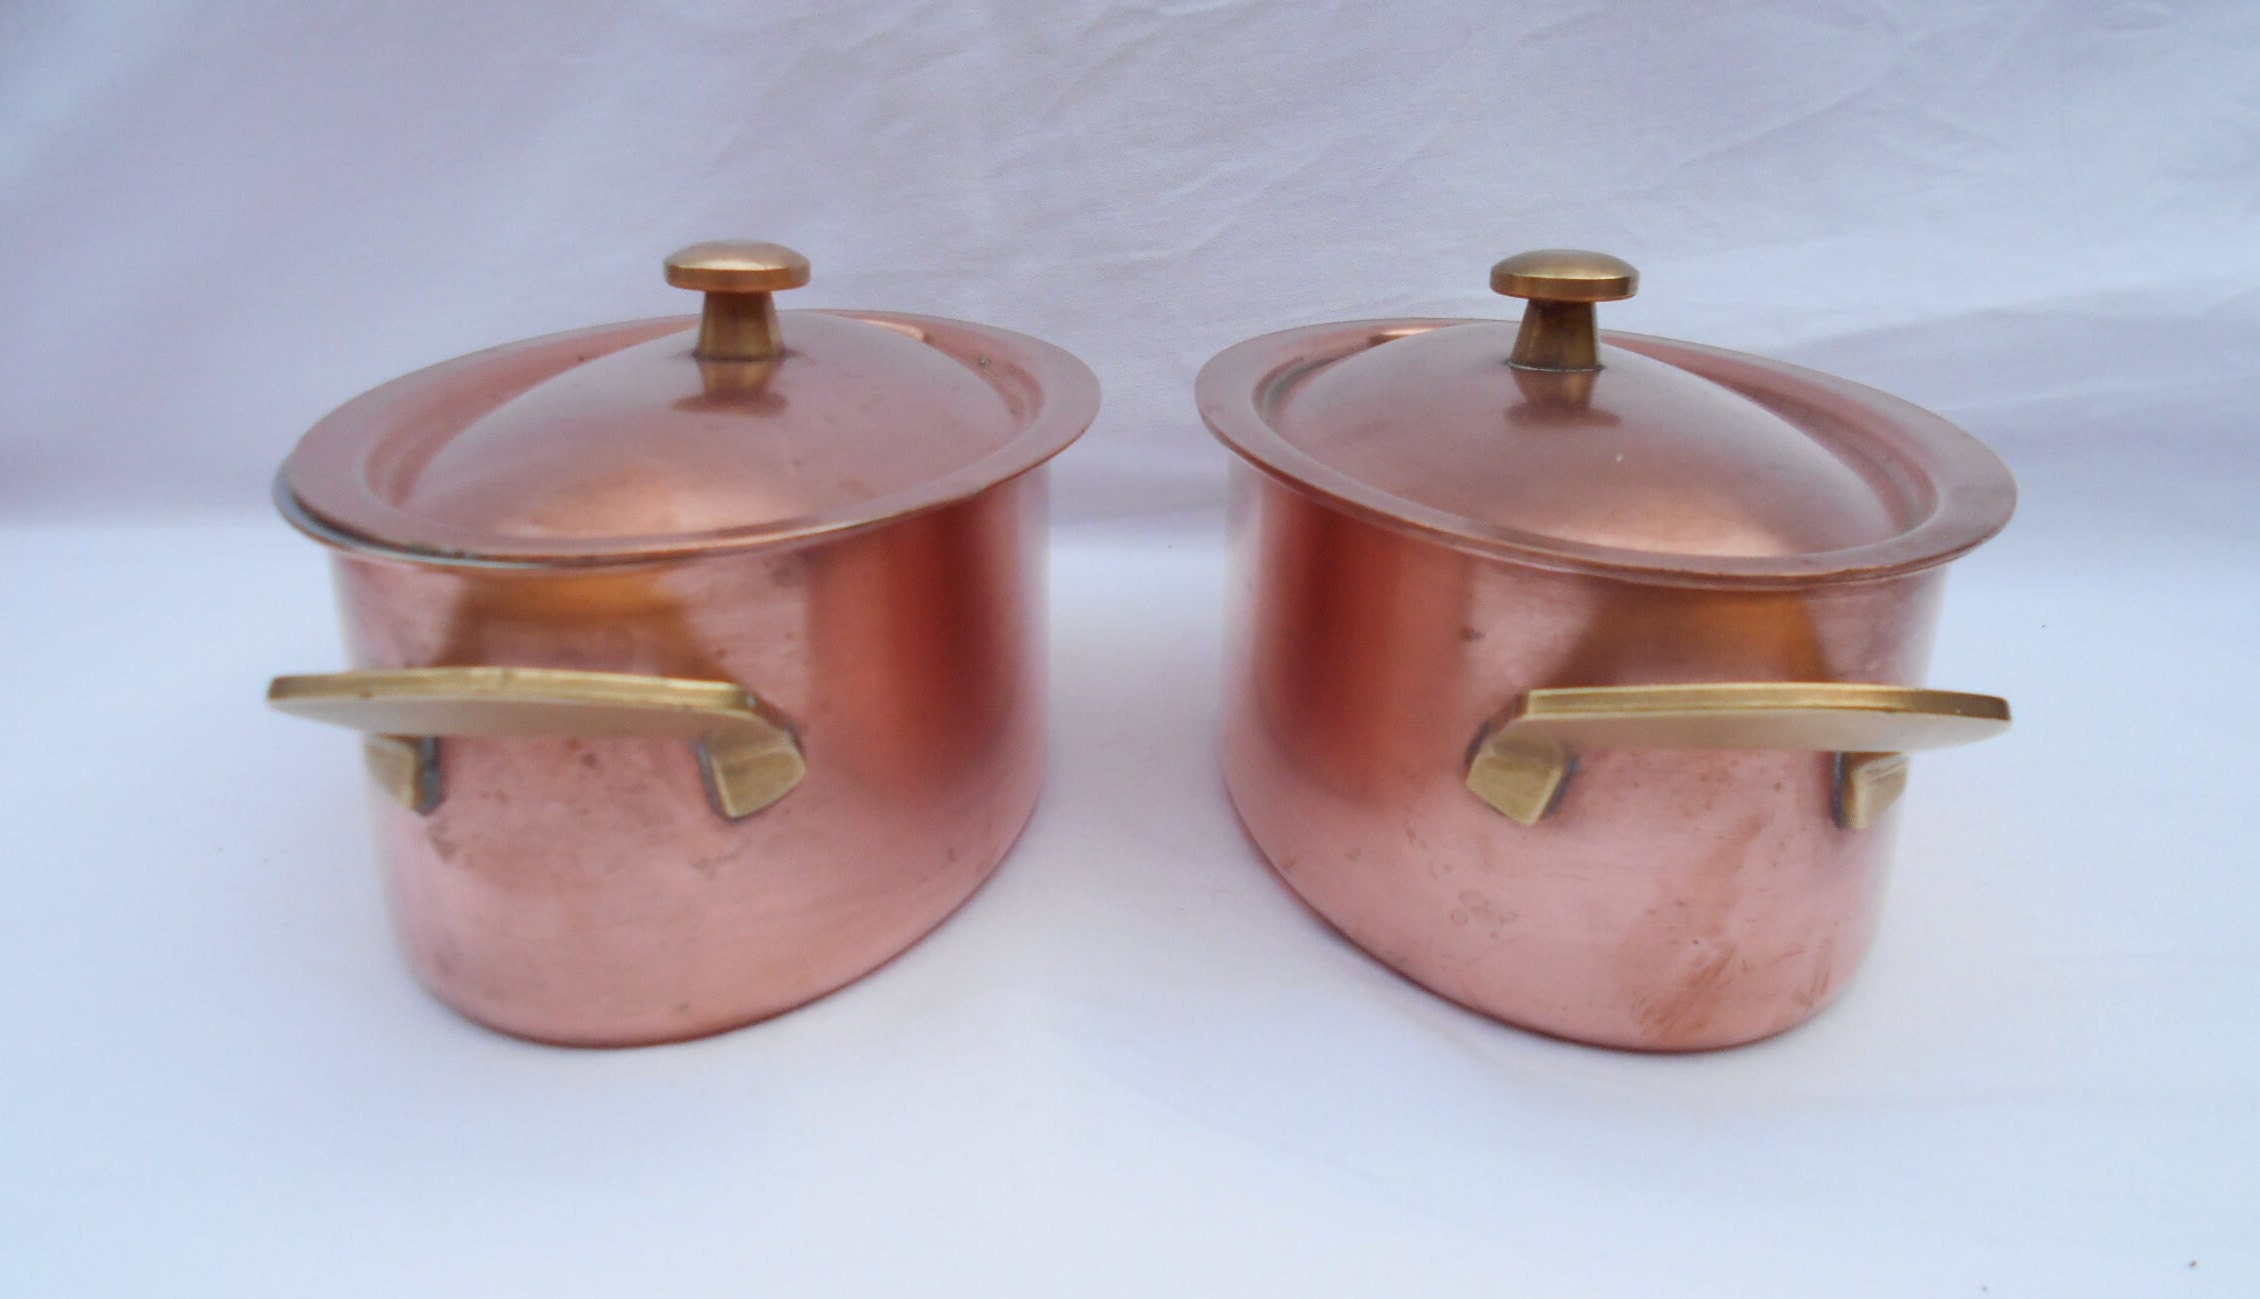 Chomette Vintage Favor Swiss Copper Cocotte Pans/Oven Pans, Set de 2